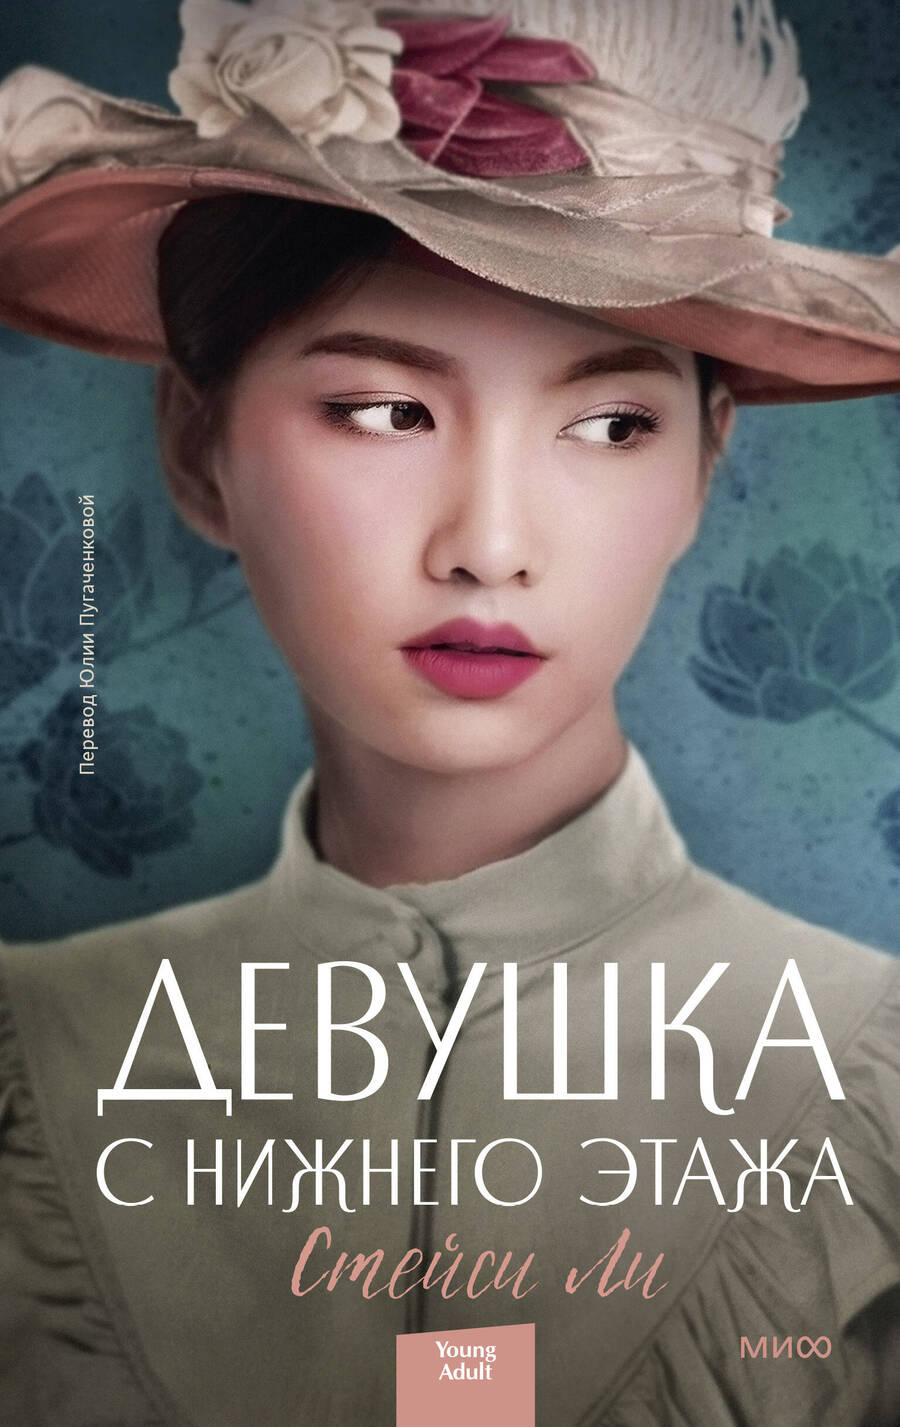 Обложка книги "Ли: Девушка с нижнего этажа"